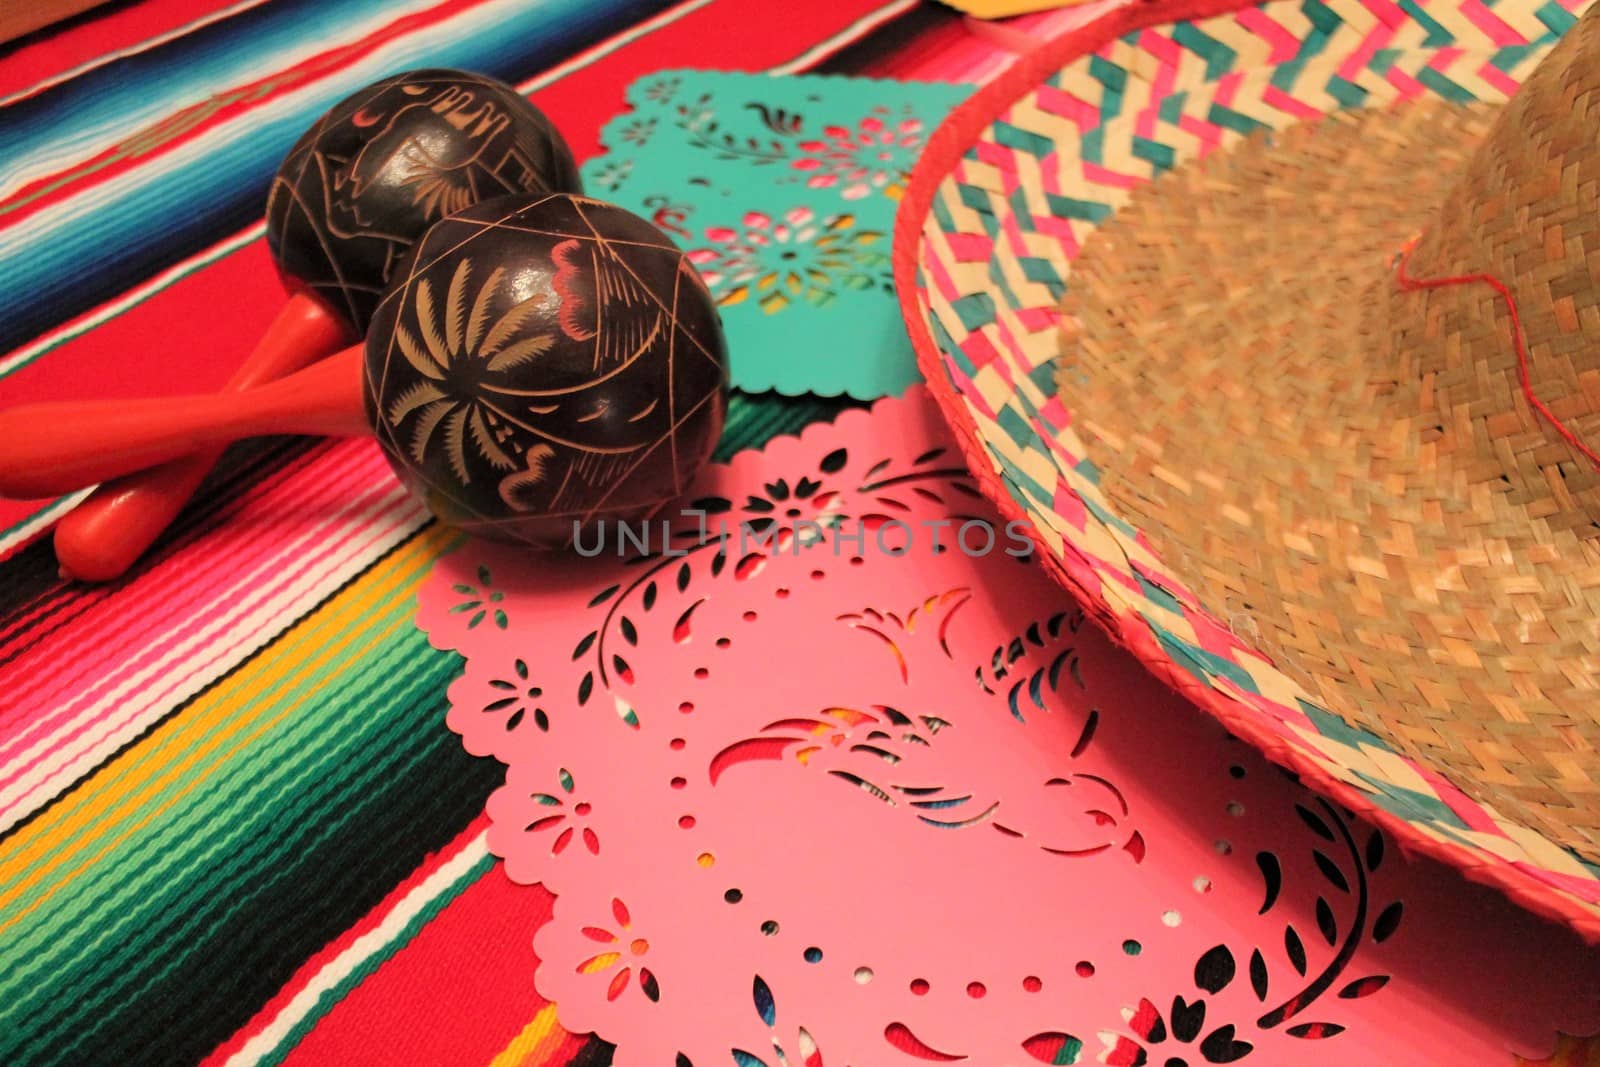 Mexico poncho sombrero maracas background fiesta cinco de mayo decoration bunting flags